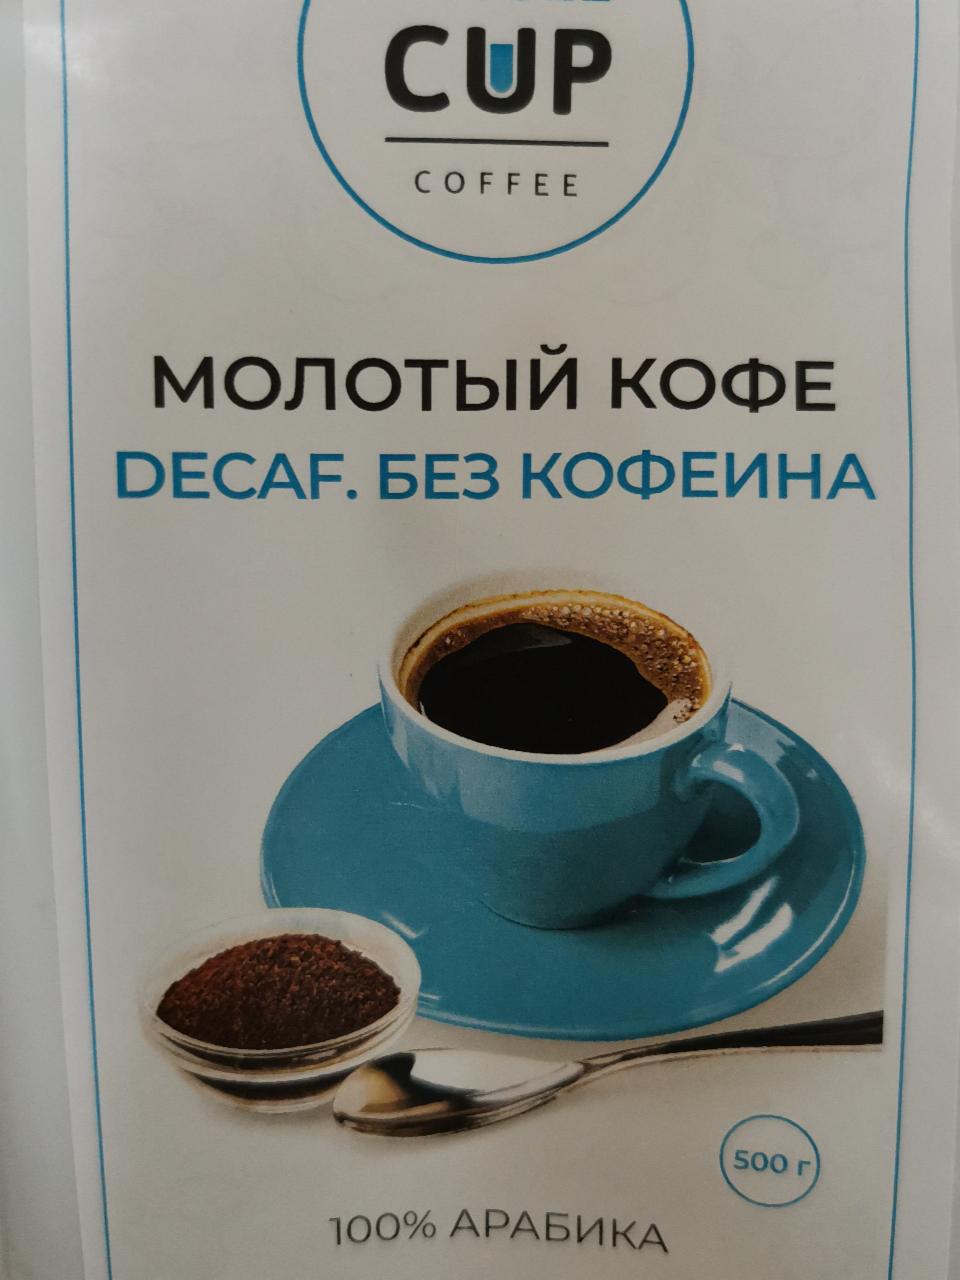 Фото - Кофе молотый Decaf Cup Coffee